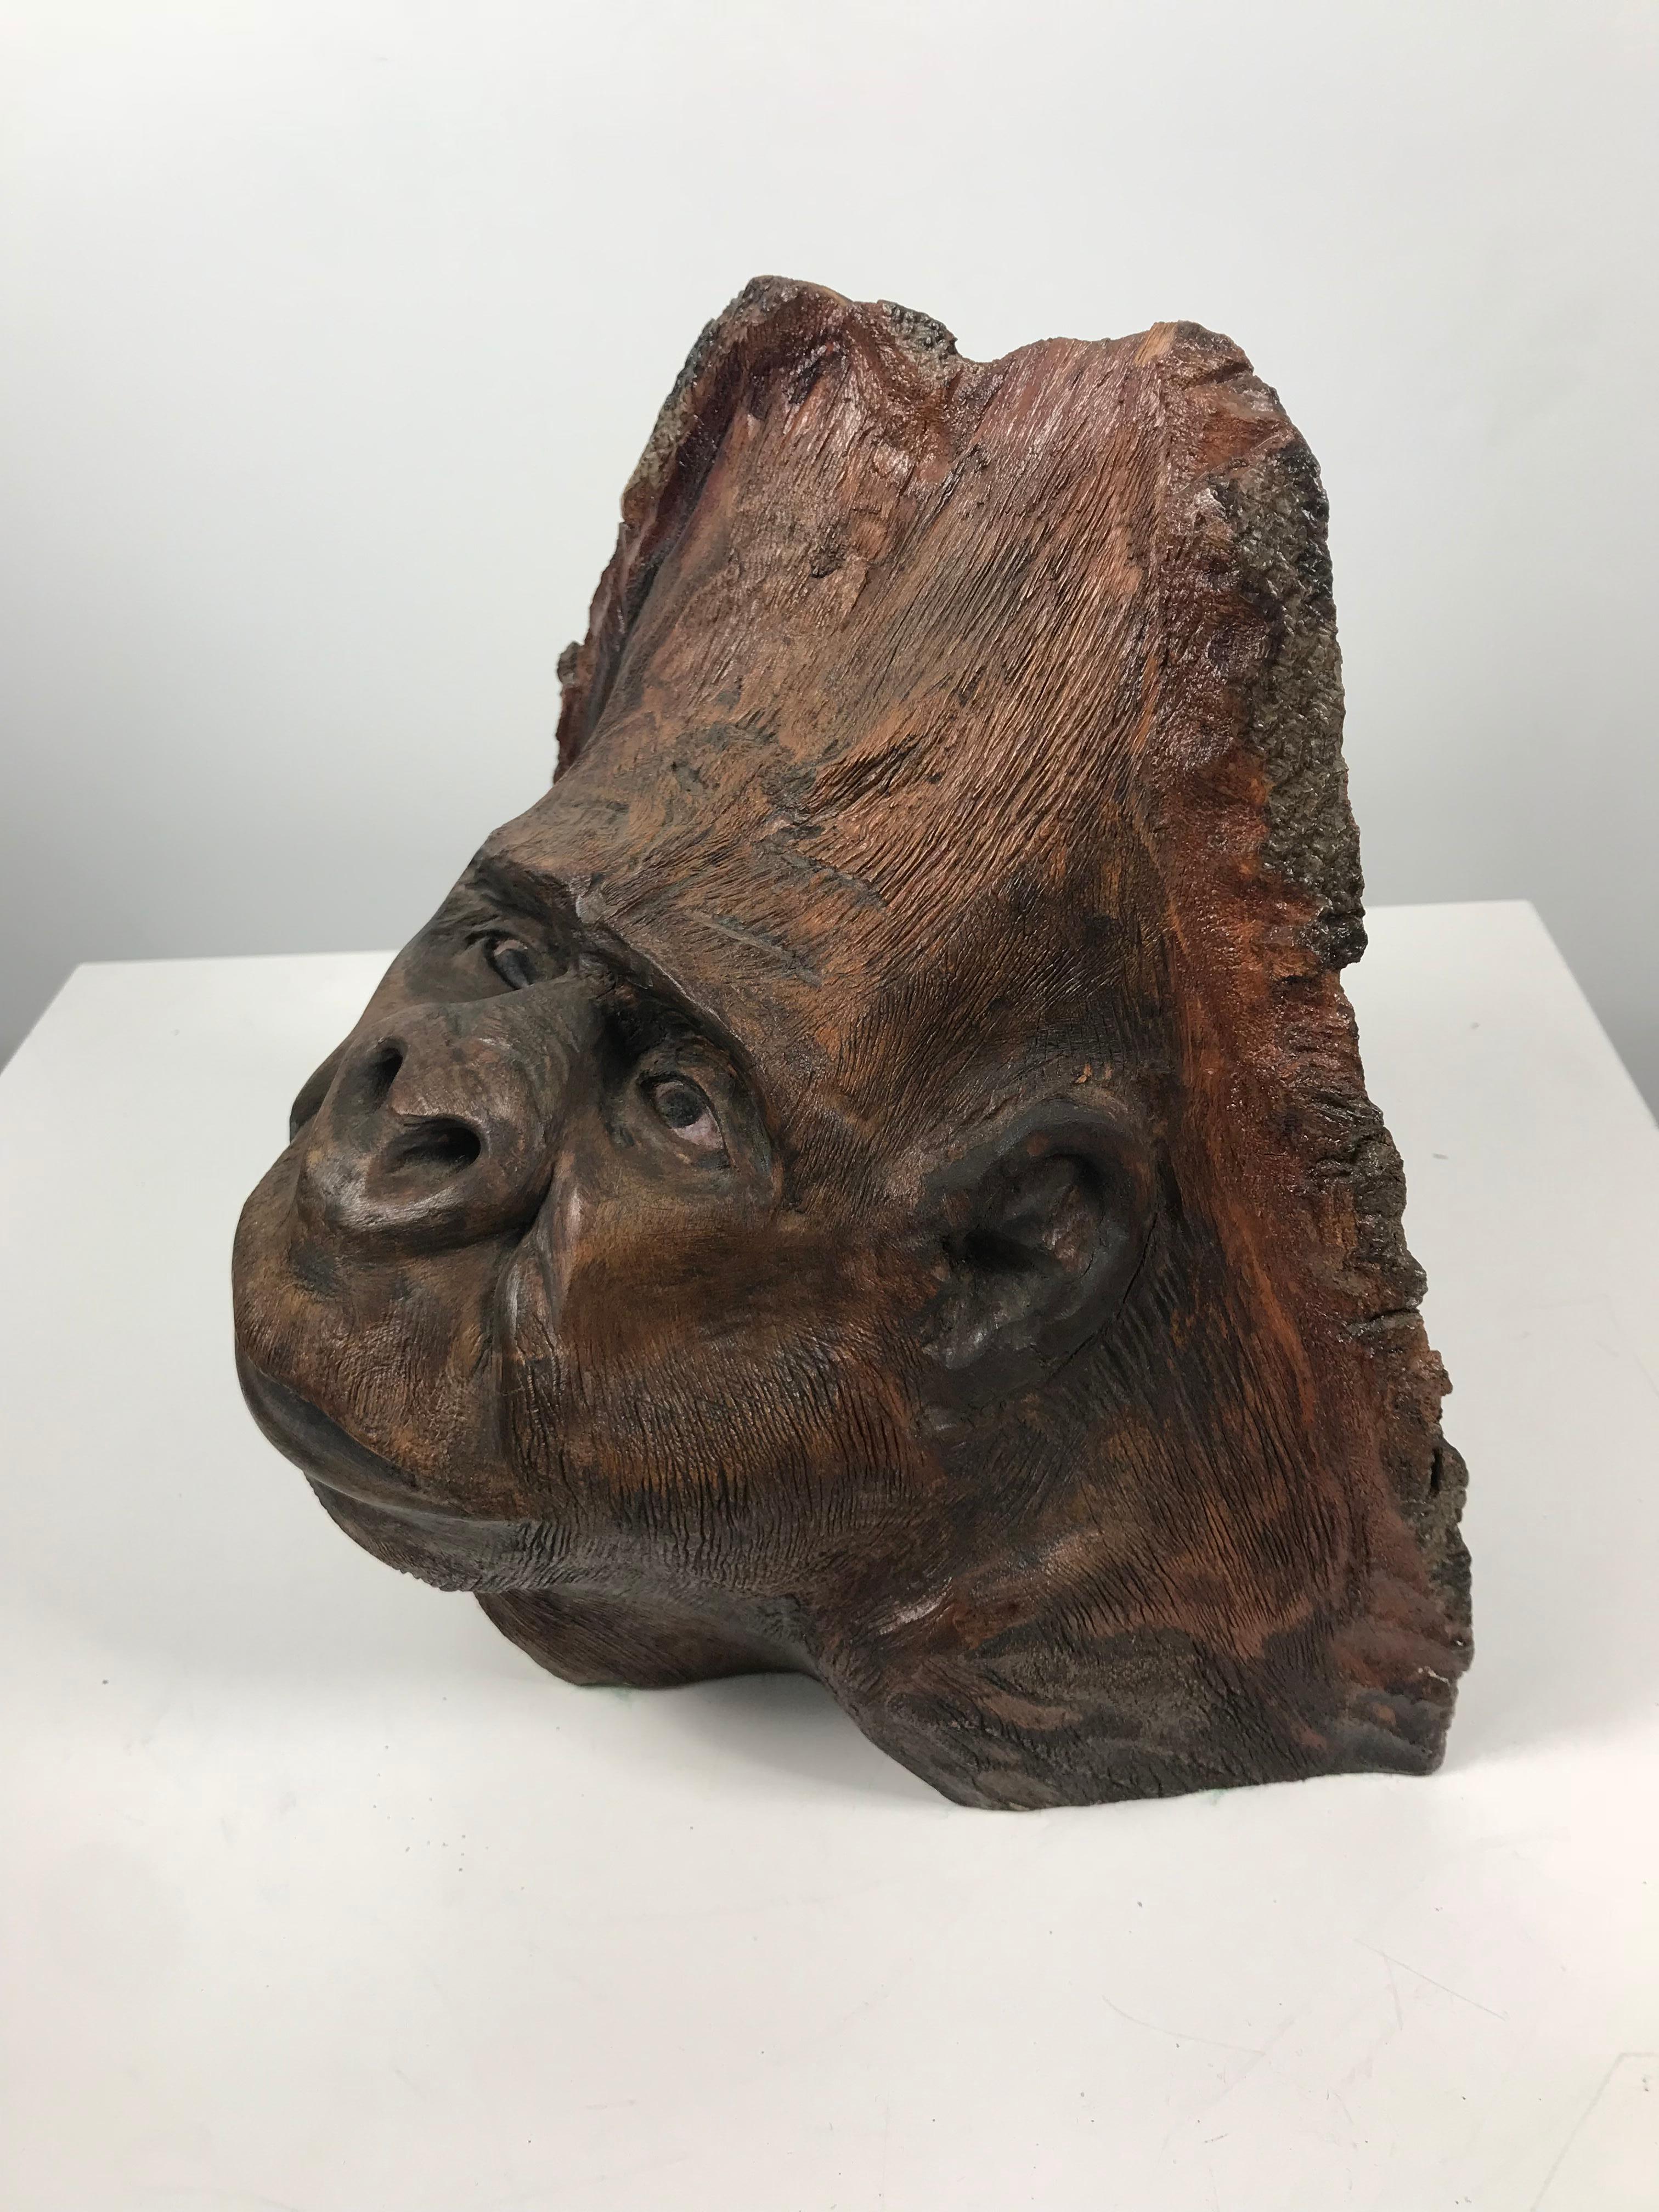 Sculpture d'art populaire inhabituelle, sculptée à la main à partir d'un nœud d'arbre, représentant un visage de gorille, une tête, une image étonnamment réaliste, extrêmement bien exécutée.